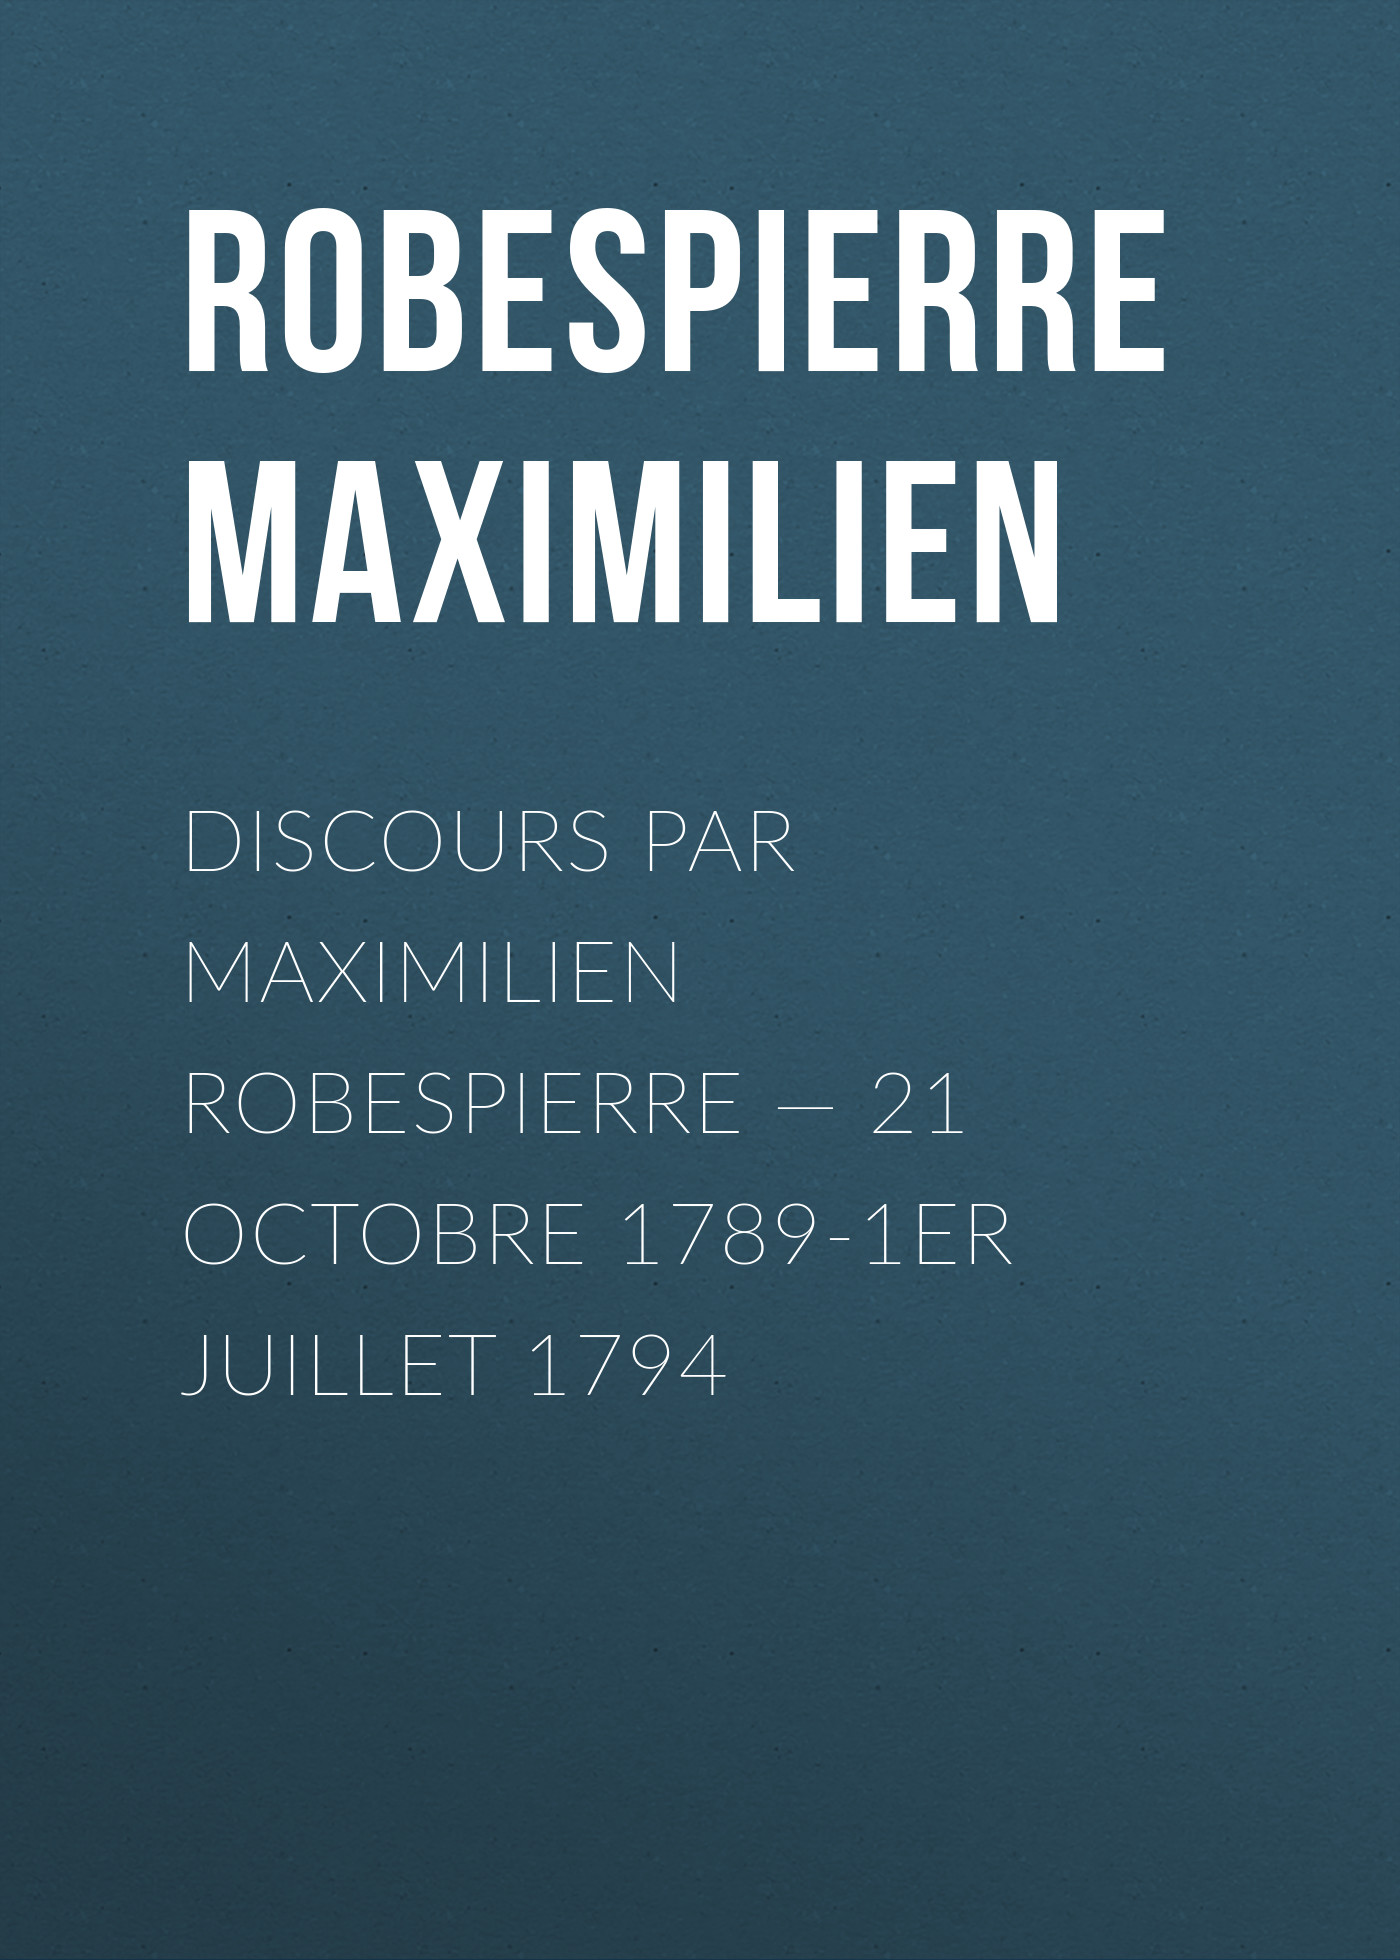 Discours par Maximilien Robespierre— 21 octobre 1789-1er juillet 1794